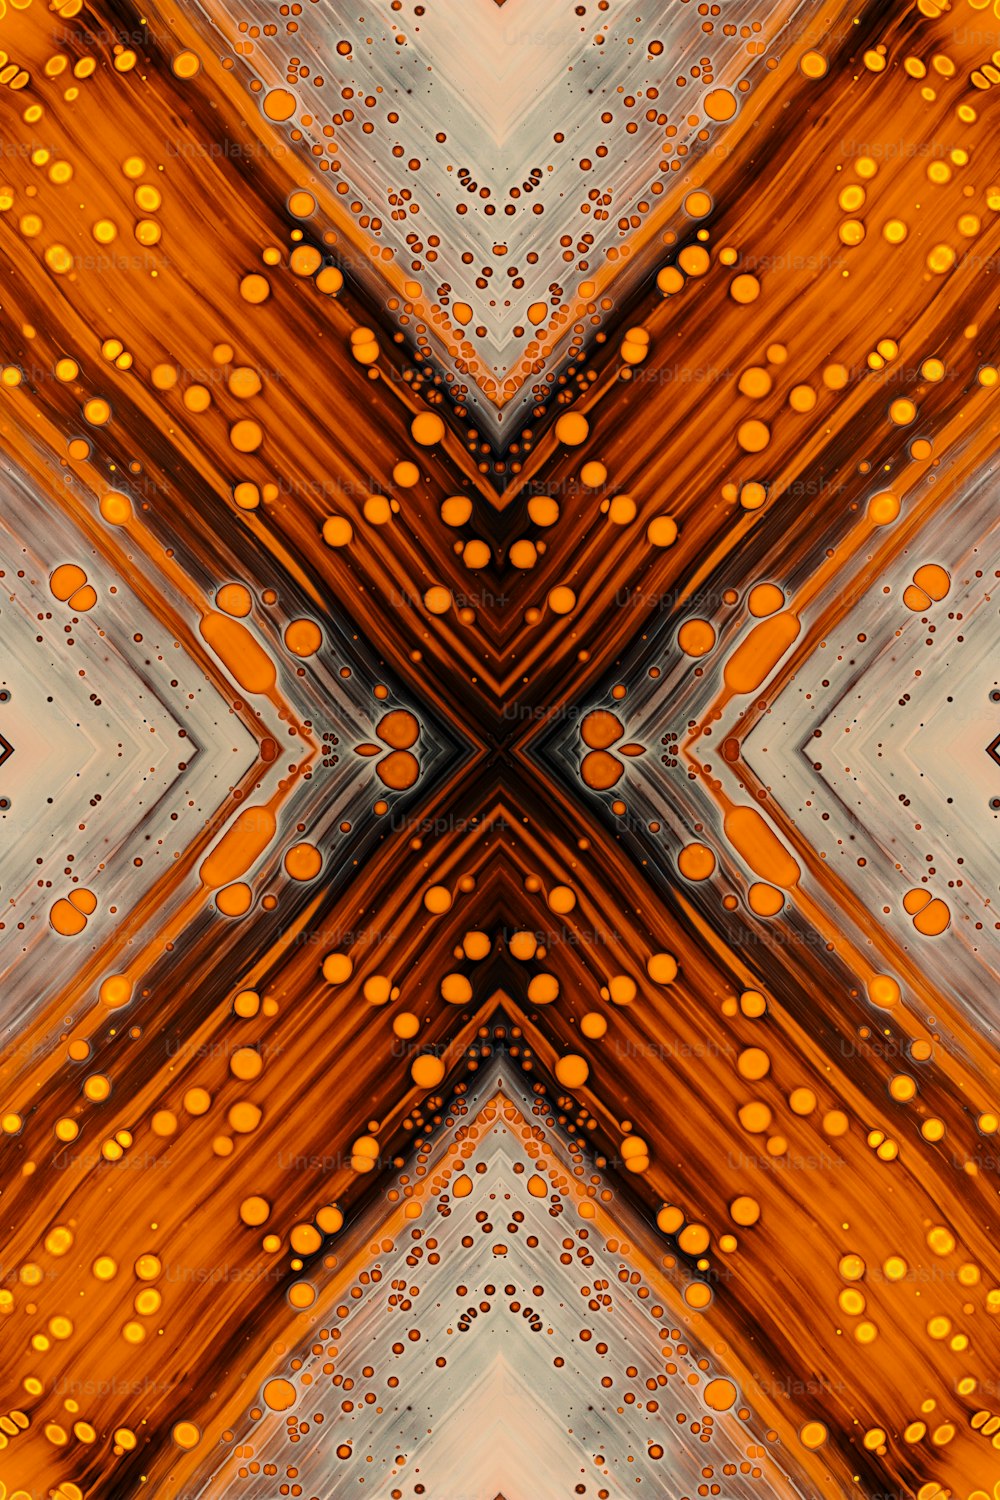 Ein abstraktes Bild eines orangefarbenen und grauen Musters